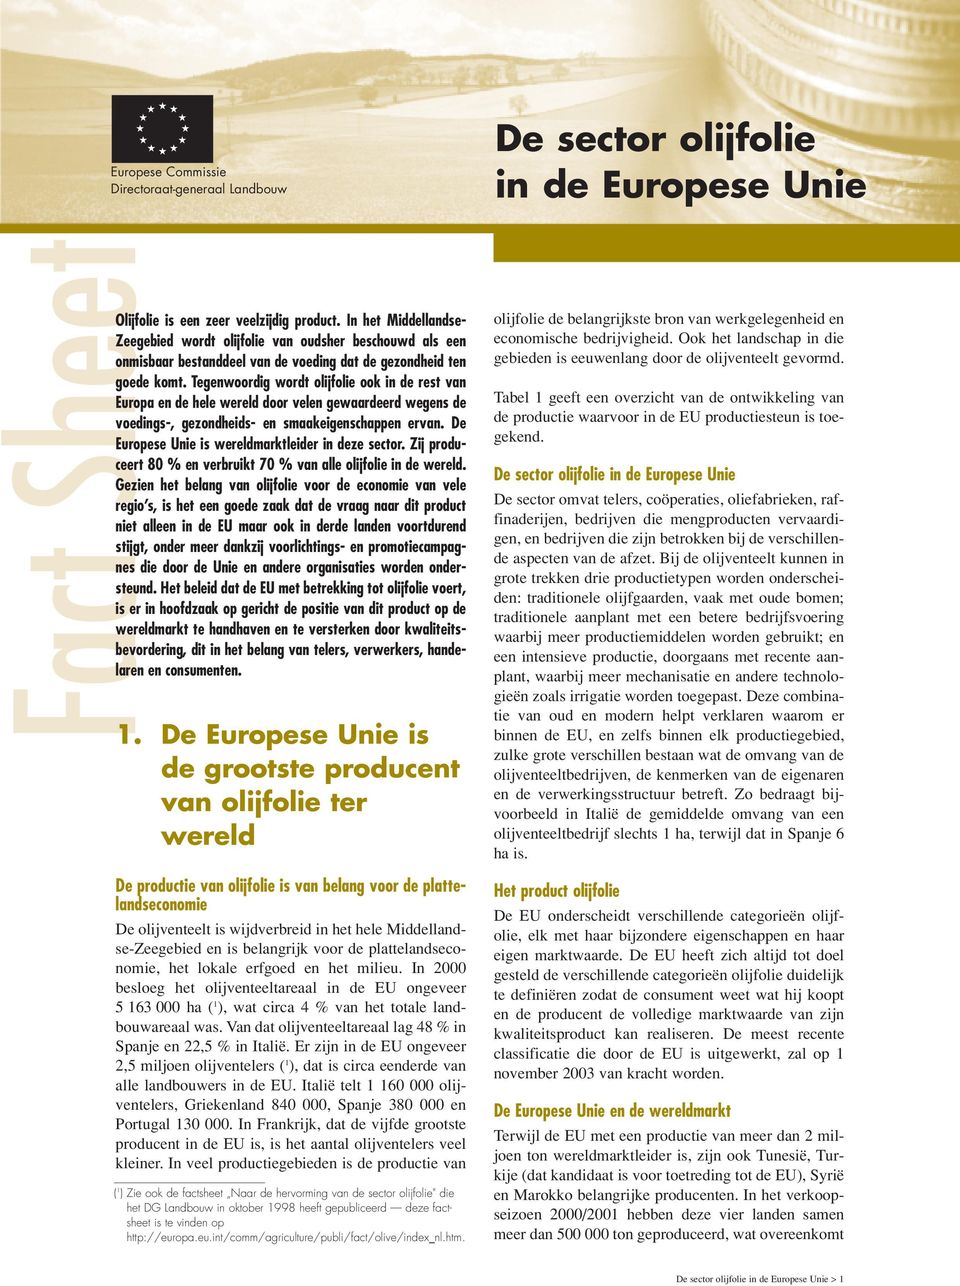 Tegenwoordig wordt olijfolie ook in de rest van Europa en de hele wereld door velen gewaardeerd wegens de voedings-, gezondheids- en smaakeigenschappen ervan.